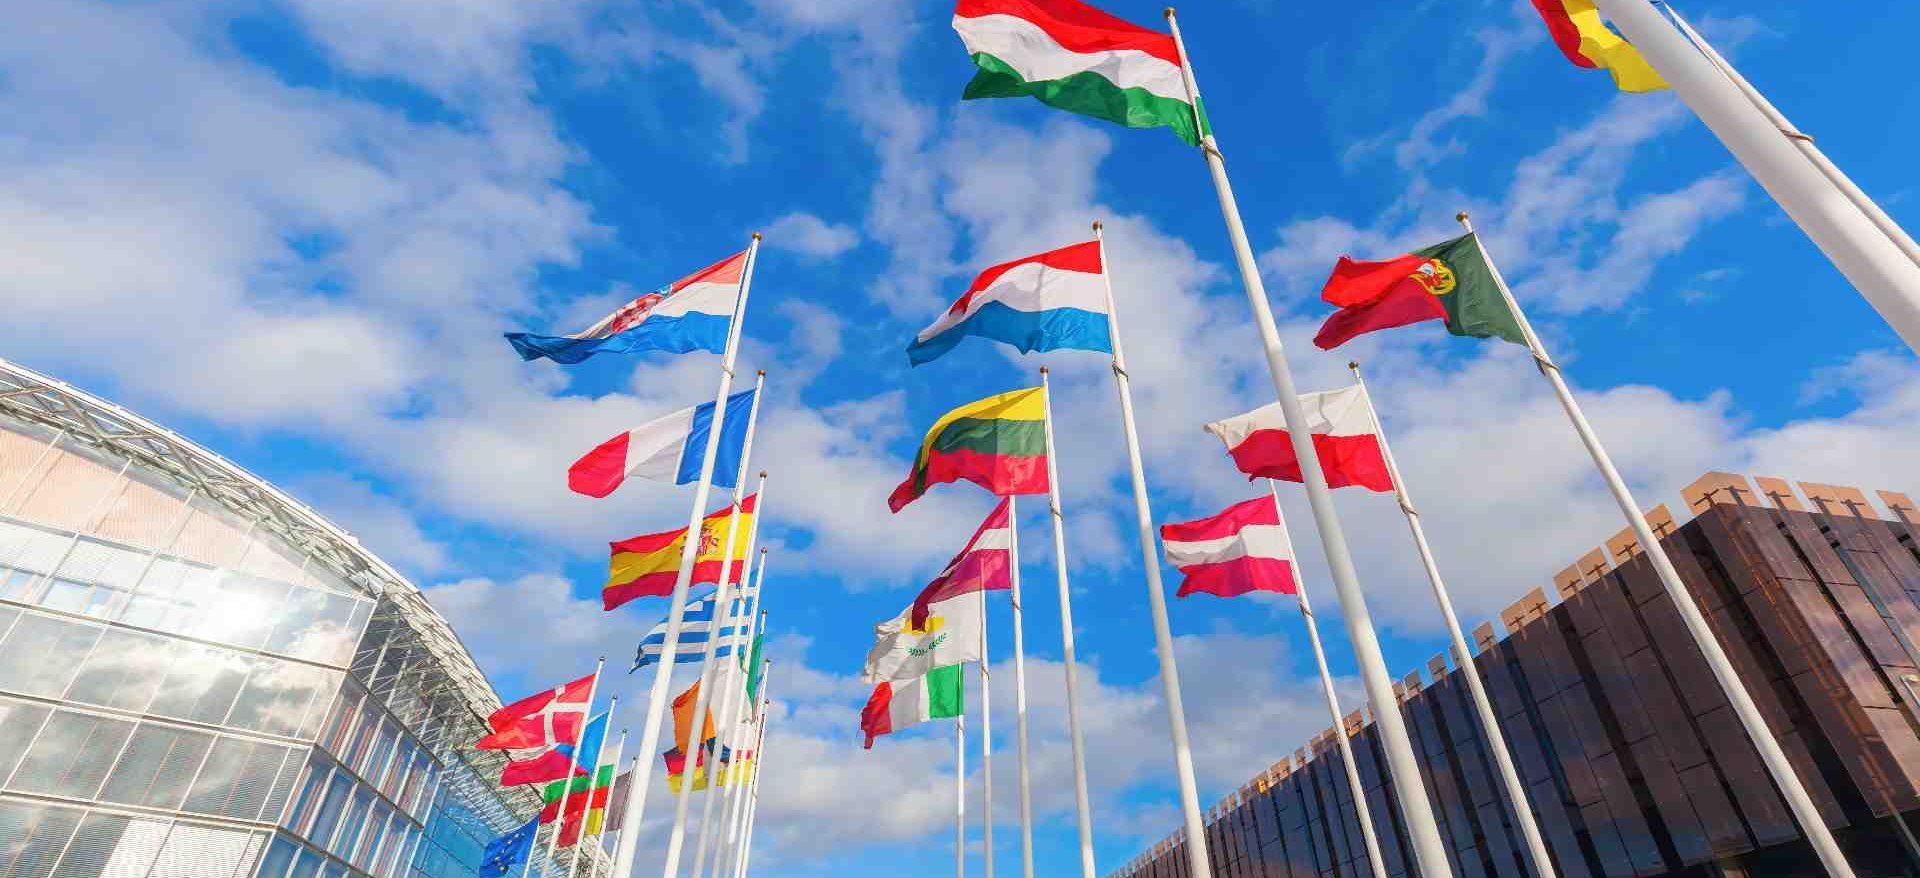 Fahnenmasten mit den Flaggen unterschiedlicher europäischer Staaten als Symbolbild für die EU-Taxonomie.